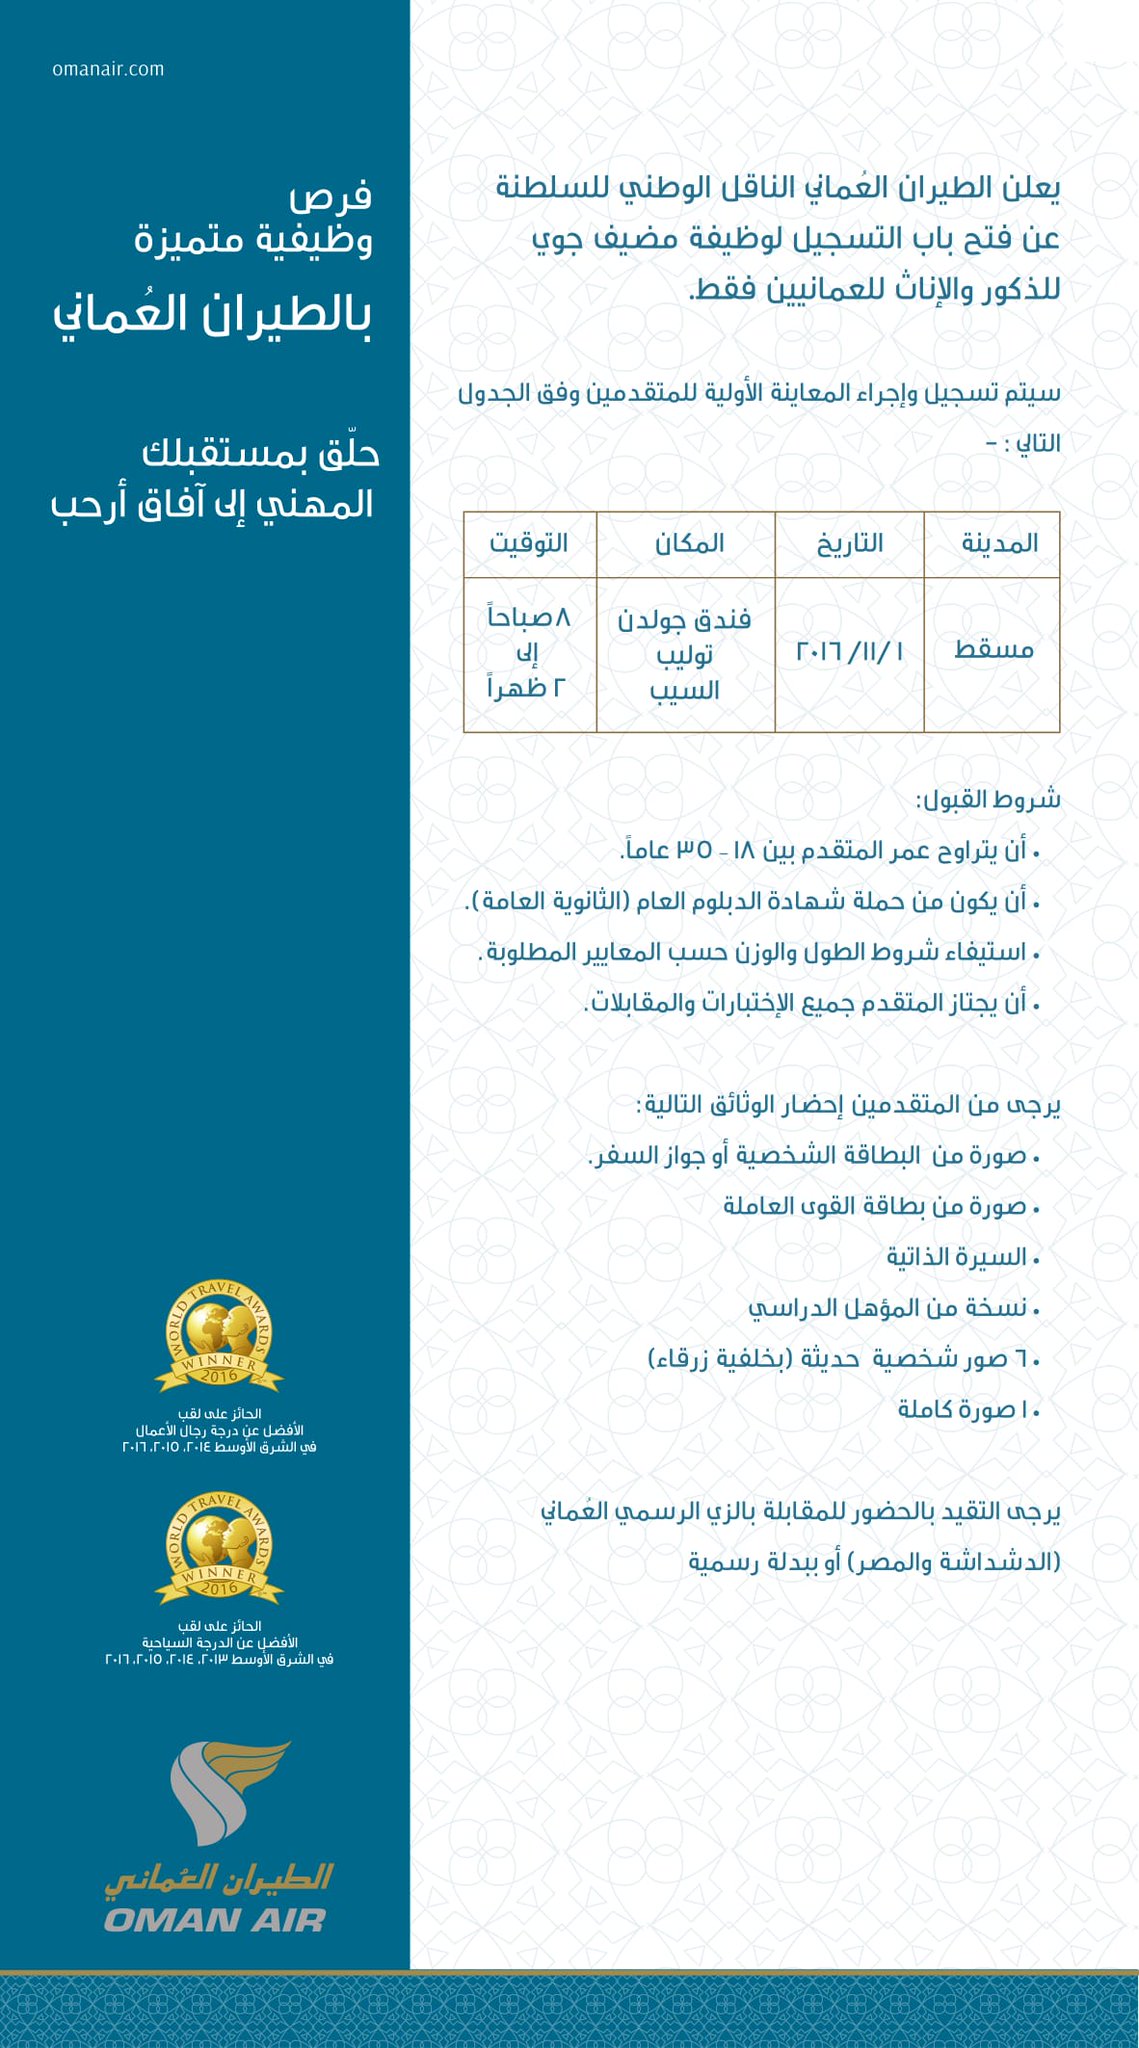 Oman Air Twitter वर يسرنا دعوة الراغبين في التسجيل لوظيفة مضيف جوي ذكورا وإناثا تقديم طلباتهم بفندق جولدن توليب السيب يوم الثلاثاء 1 نوفمبر وفق الإعلان المرفق Https T Co Wdaz93pcbb